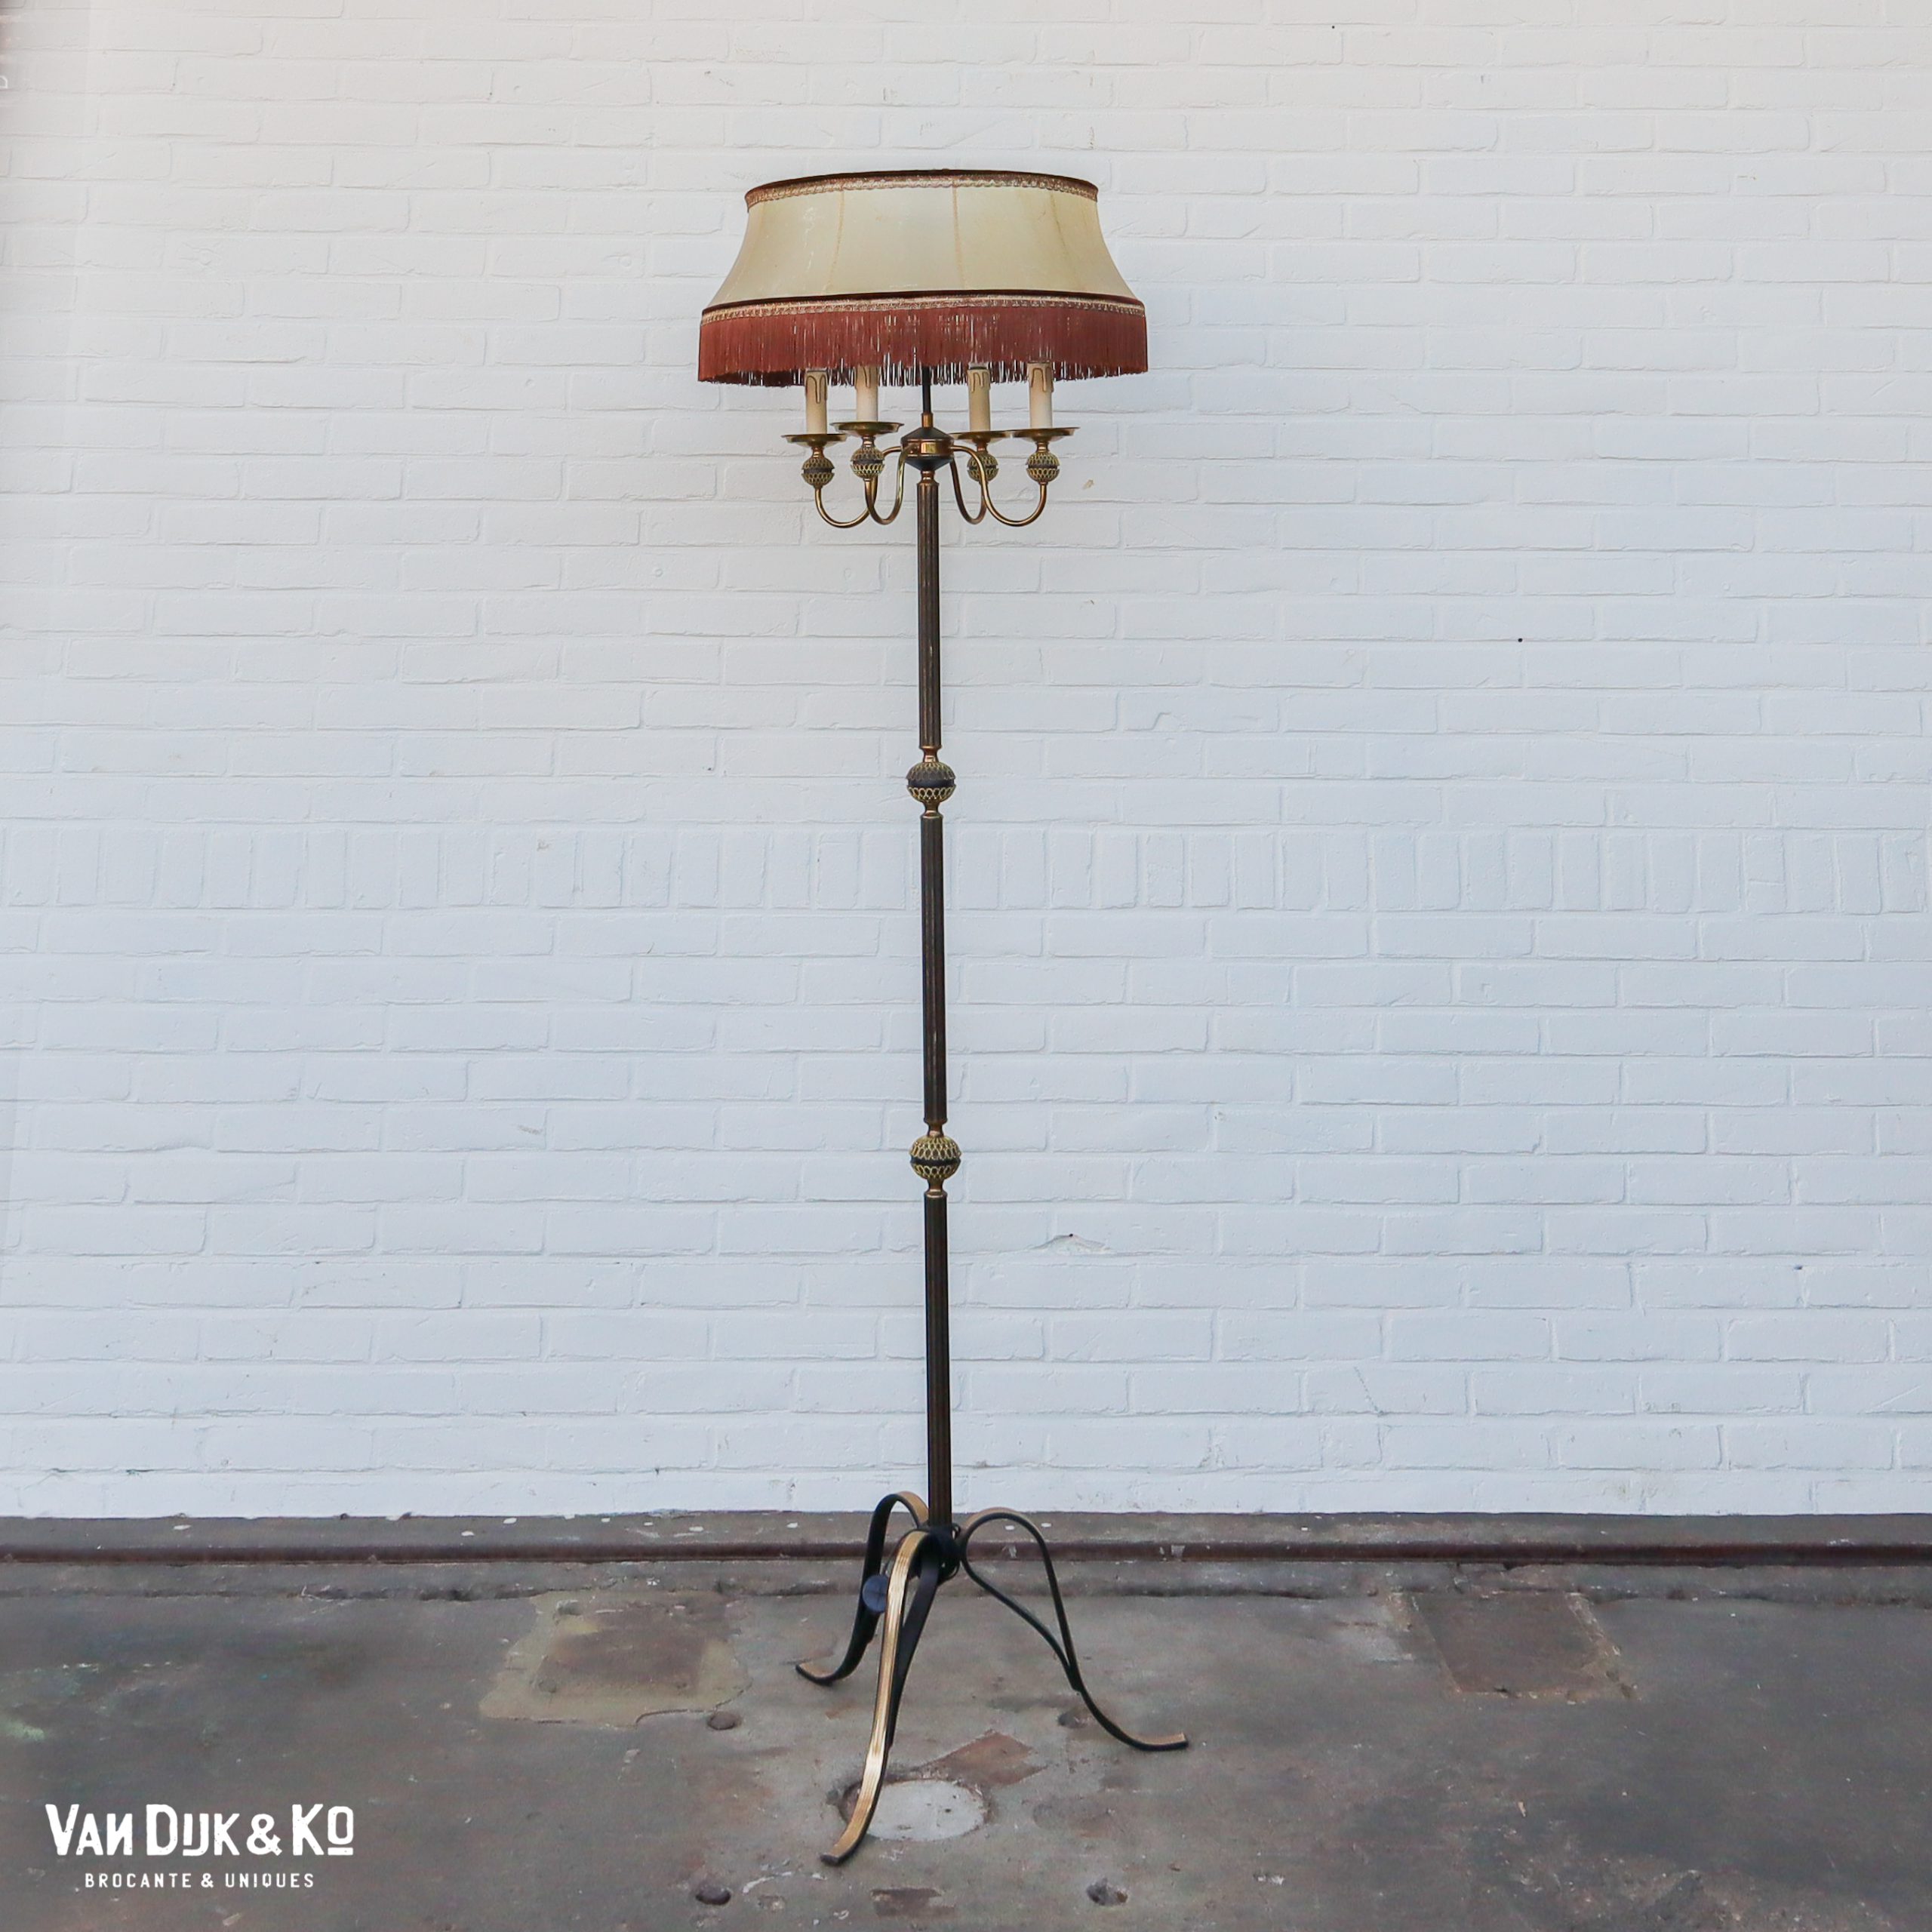 Grommen uitbreiden slagader Vintage vloerlamp » Van Dijk & Ko